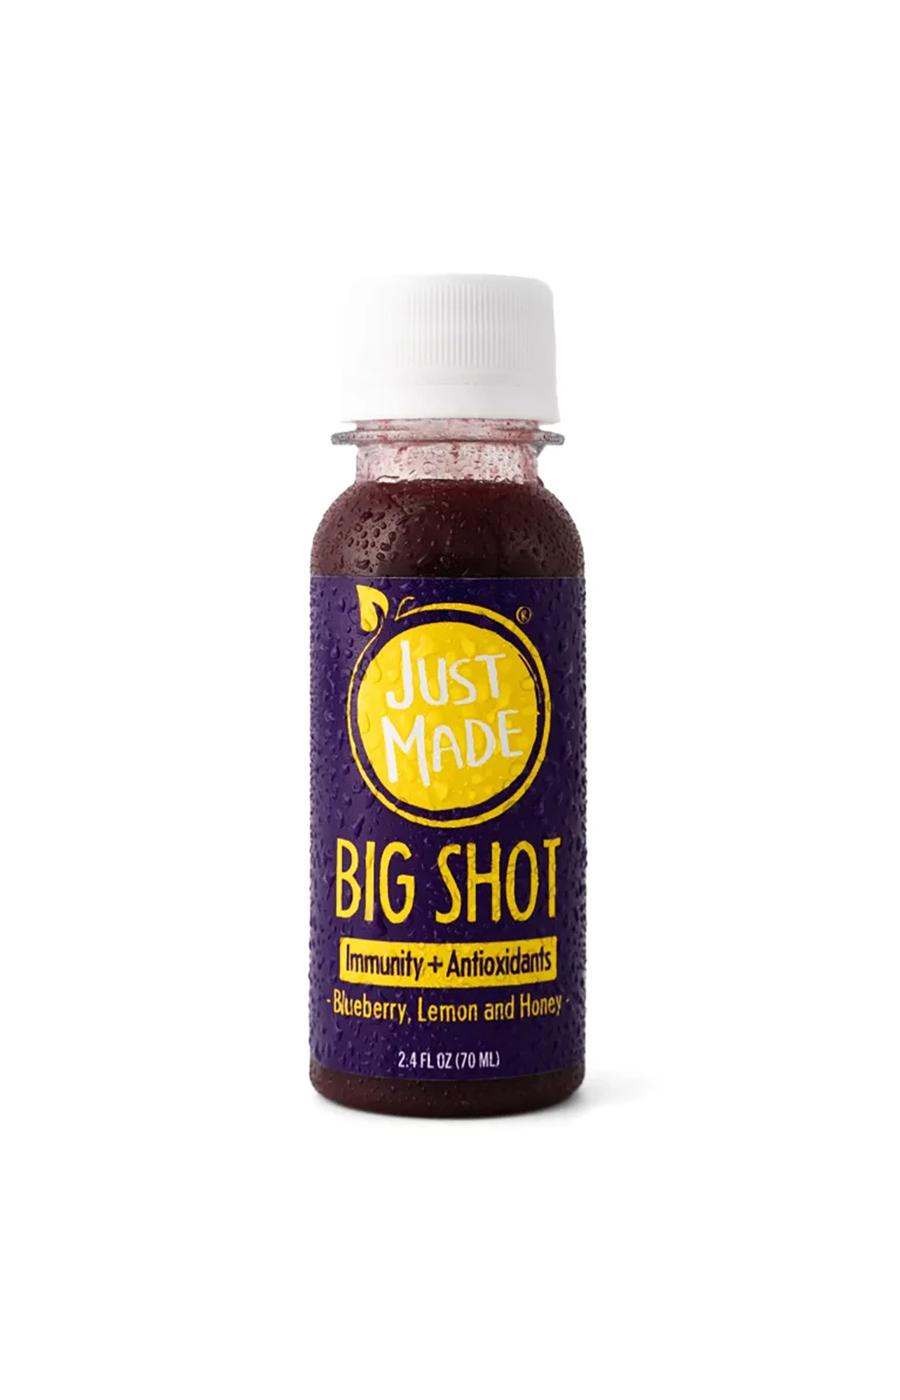 Just Made Immunity + Antioxidants Big Shot - Blueberry Lemon & Honey; image 1 of 2